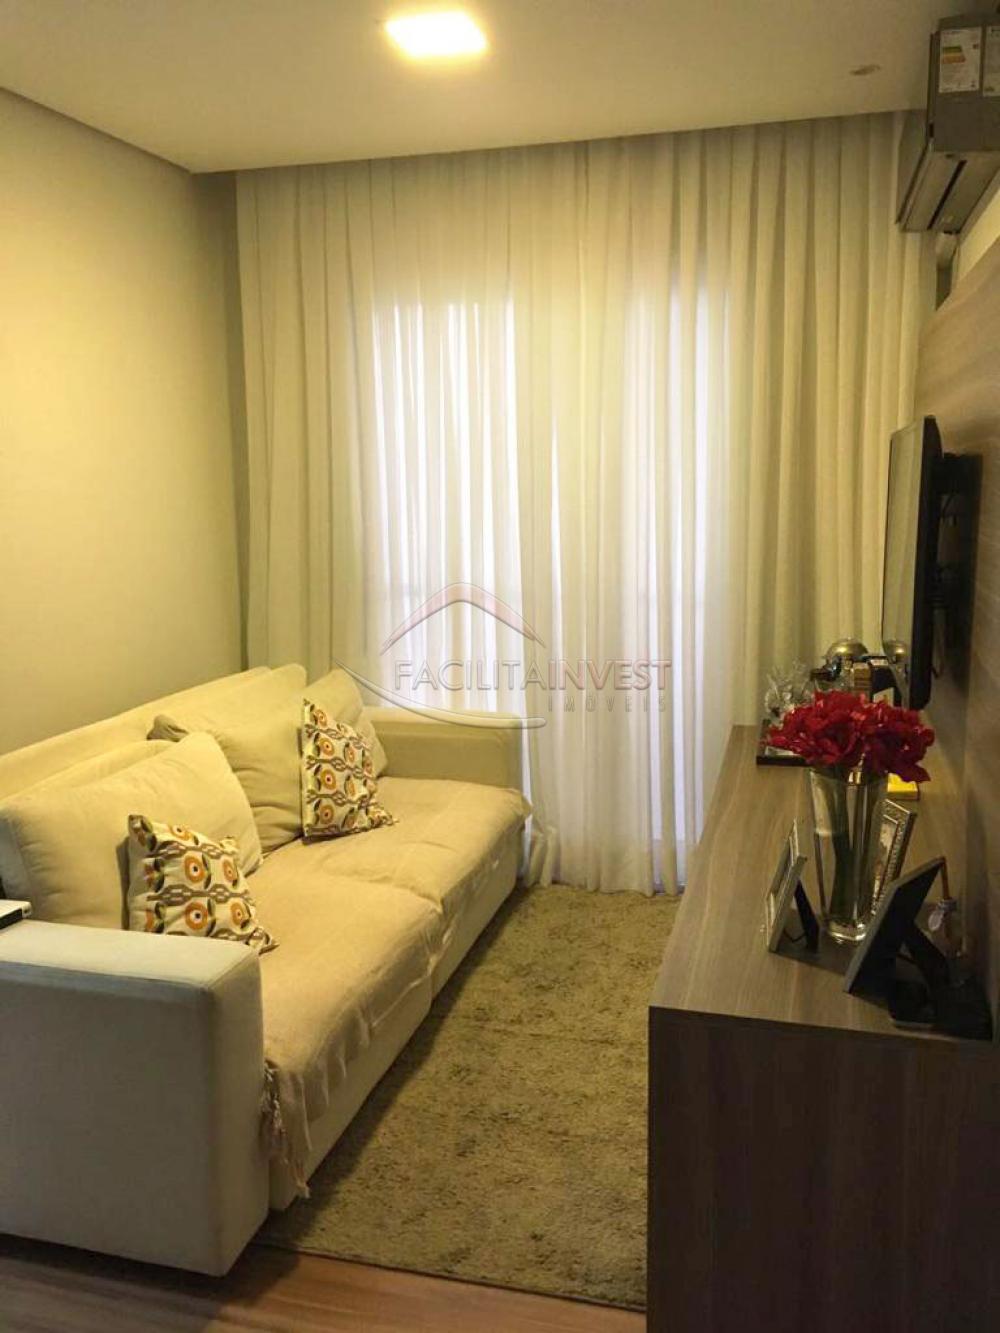 Alugar Apartamentos / Apartamento Mobiliado em Ribeirão Preto R$ 1.000,00 - Foto 1